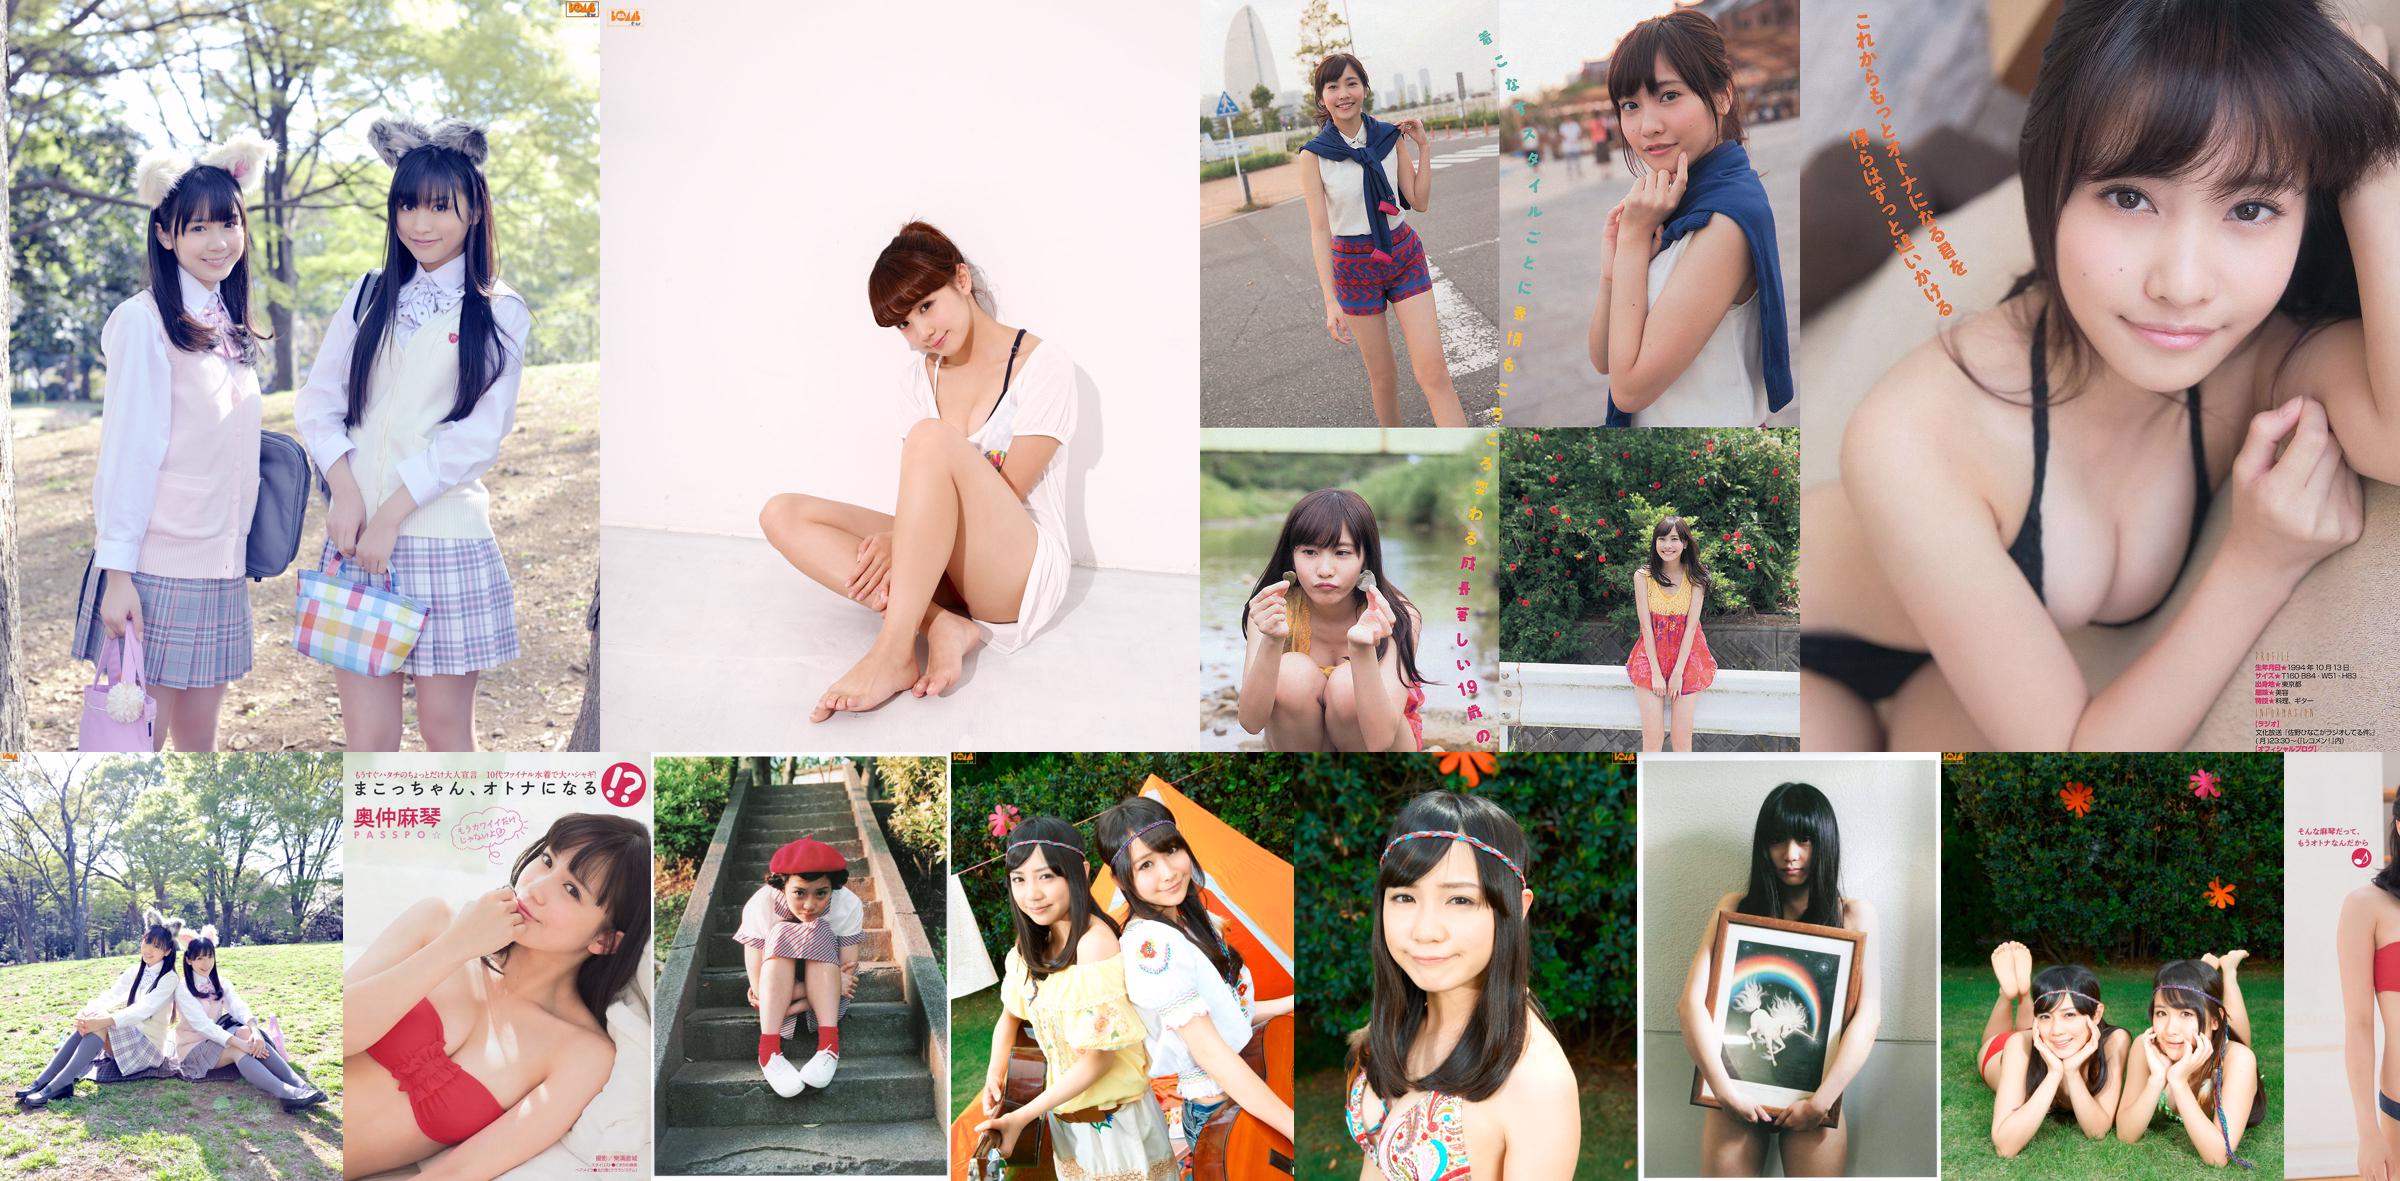 [นิตยสาร Young] Makoto Okunaka Hinako Sano Ayumi Hamasaki 2013 No.50 ภาพถ่าย Makoto No.4329f6 หน้า 2